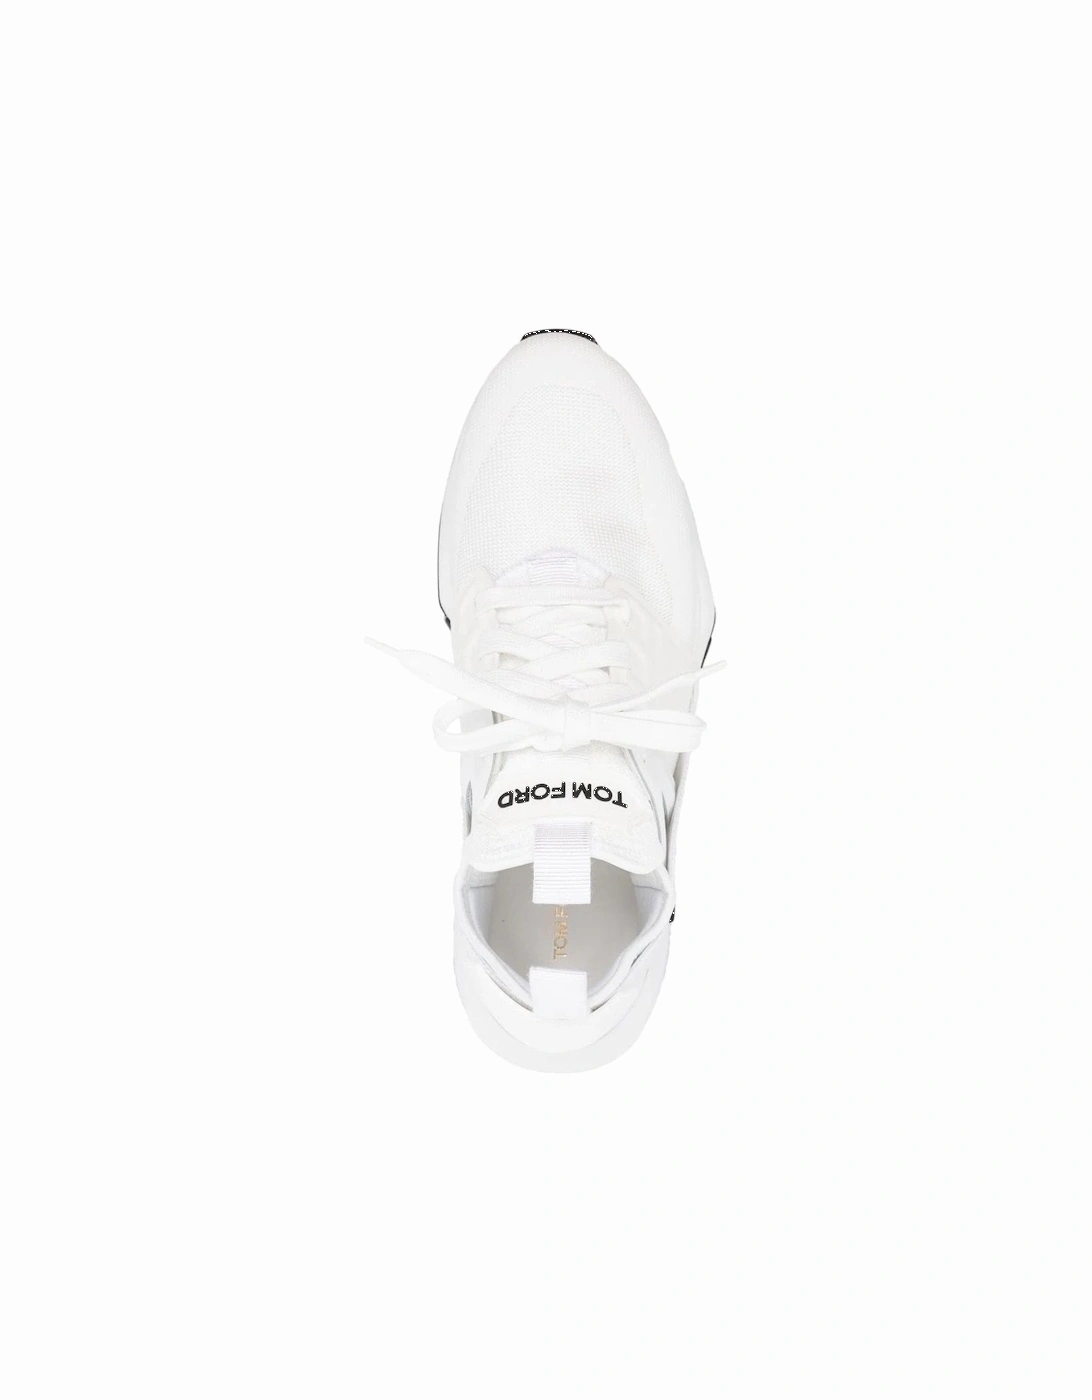 Jago Neoprene Sneakers White